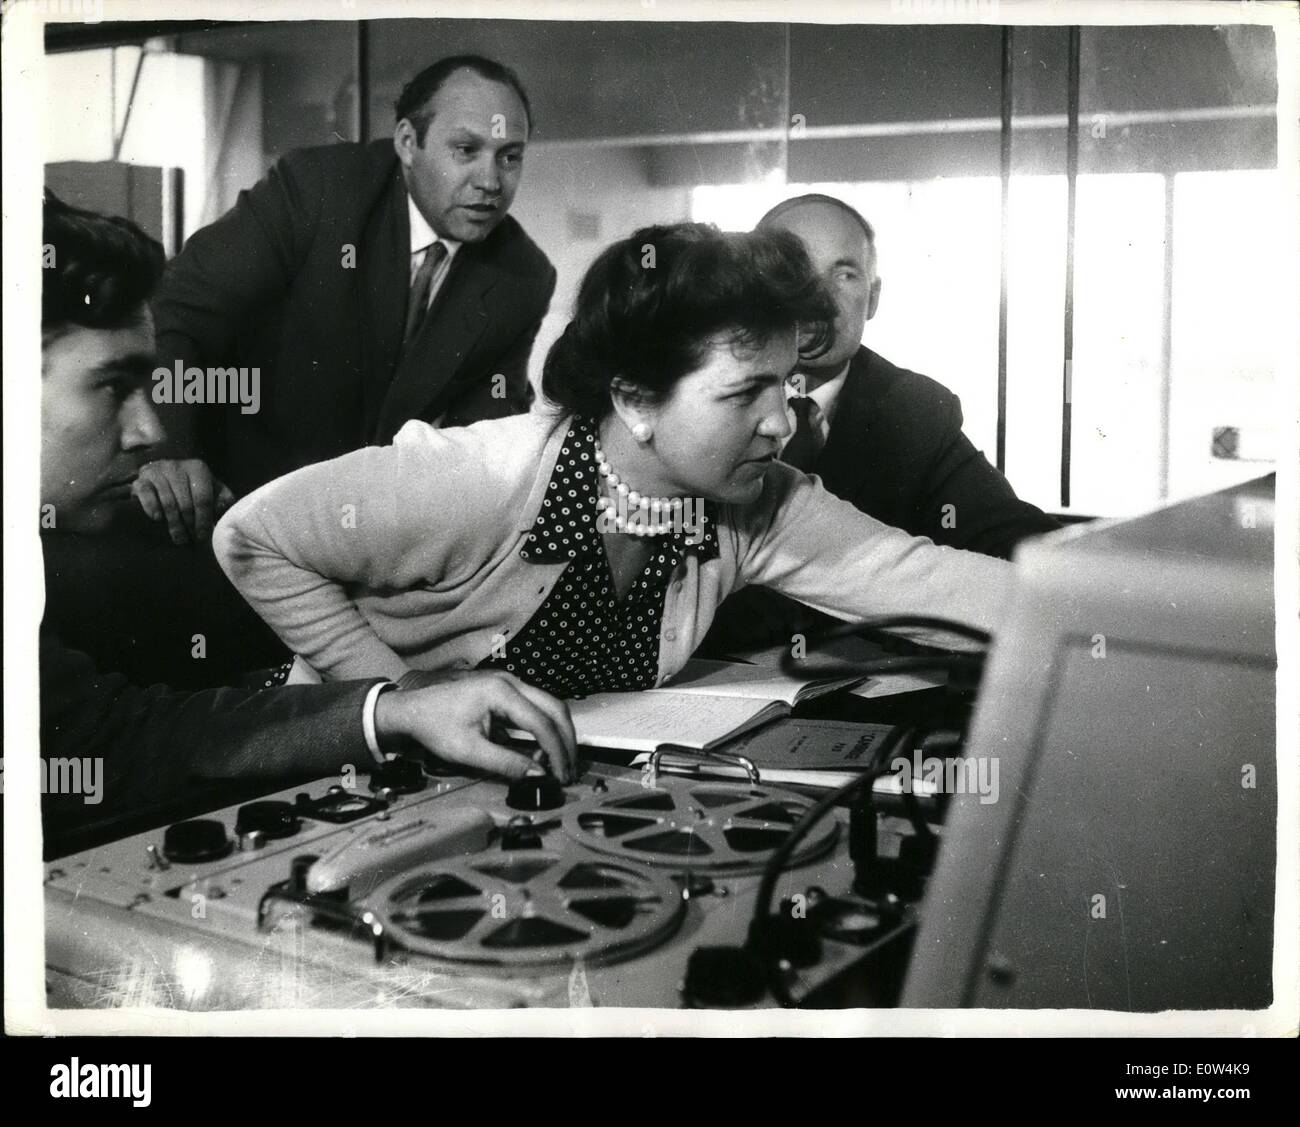 6. Juni 1961 - sie jagt für '' verloren Bleep'' russische Experten Suche nach vermissten russischen Venus-gebundenen Rakete - die jetzt geglaubt wird, um 62,000,000 Meilen von der Erde zu sein, die Rakete nicht mehr sendet Signale auf Feb.17th. Foto zeigt Professor Alla Masewitch Russlands Top Platz Frau ist (sie ist 40) aufgezeichneten '' Bleeps'' bei Jodrell Bank - beobachtet von russischen Rakete-Experte Dr. Jouli Khodareu (links) und Professor Sir Bernard Lovell(right) hört Stockfoto